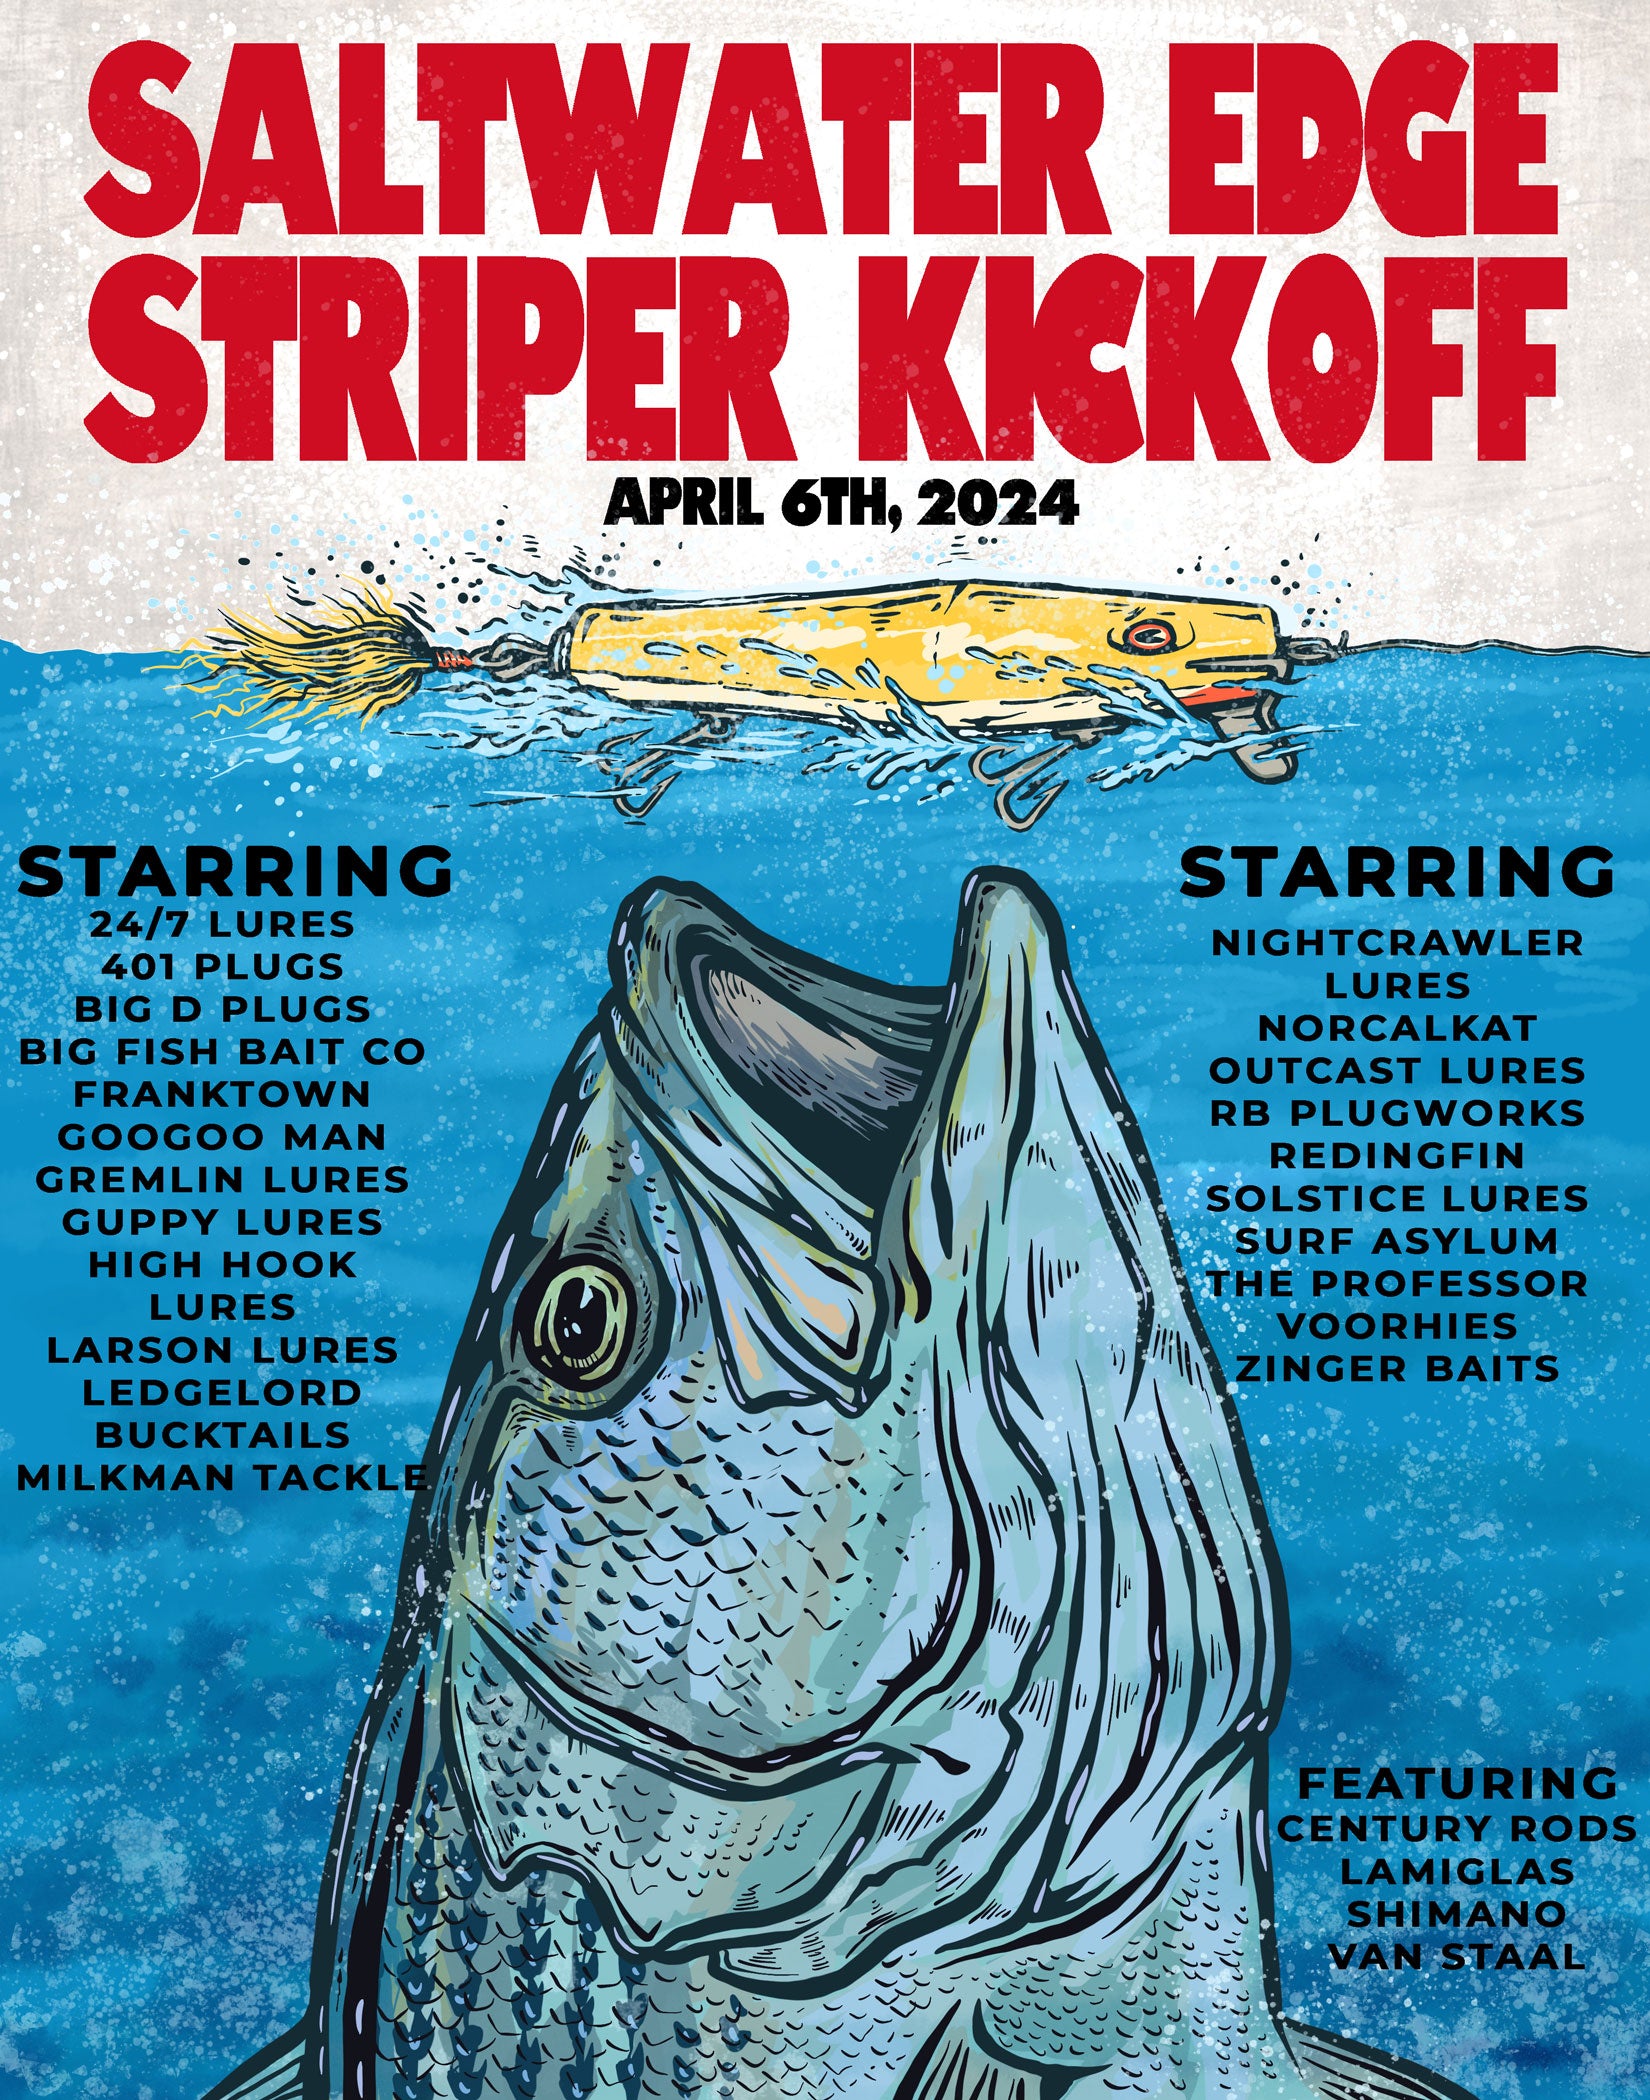 2024 Striper Kickoff! April 6th 2024